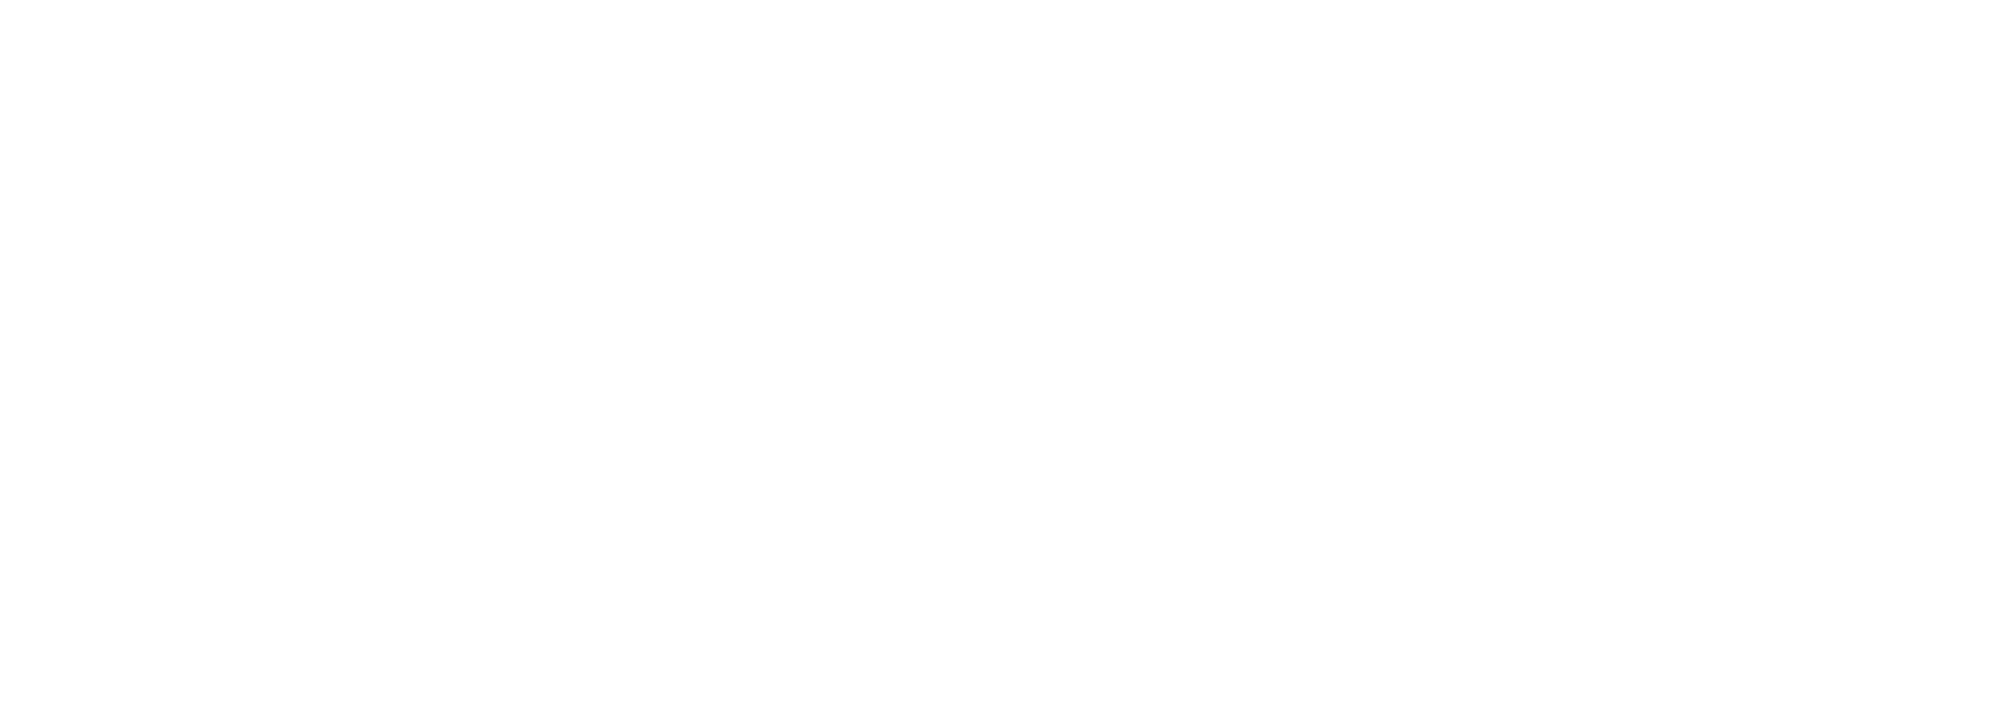 Świat GSM - Mediaplaneta.pl